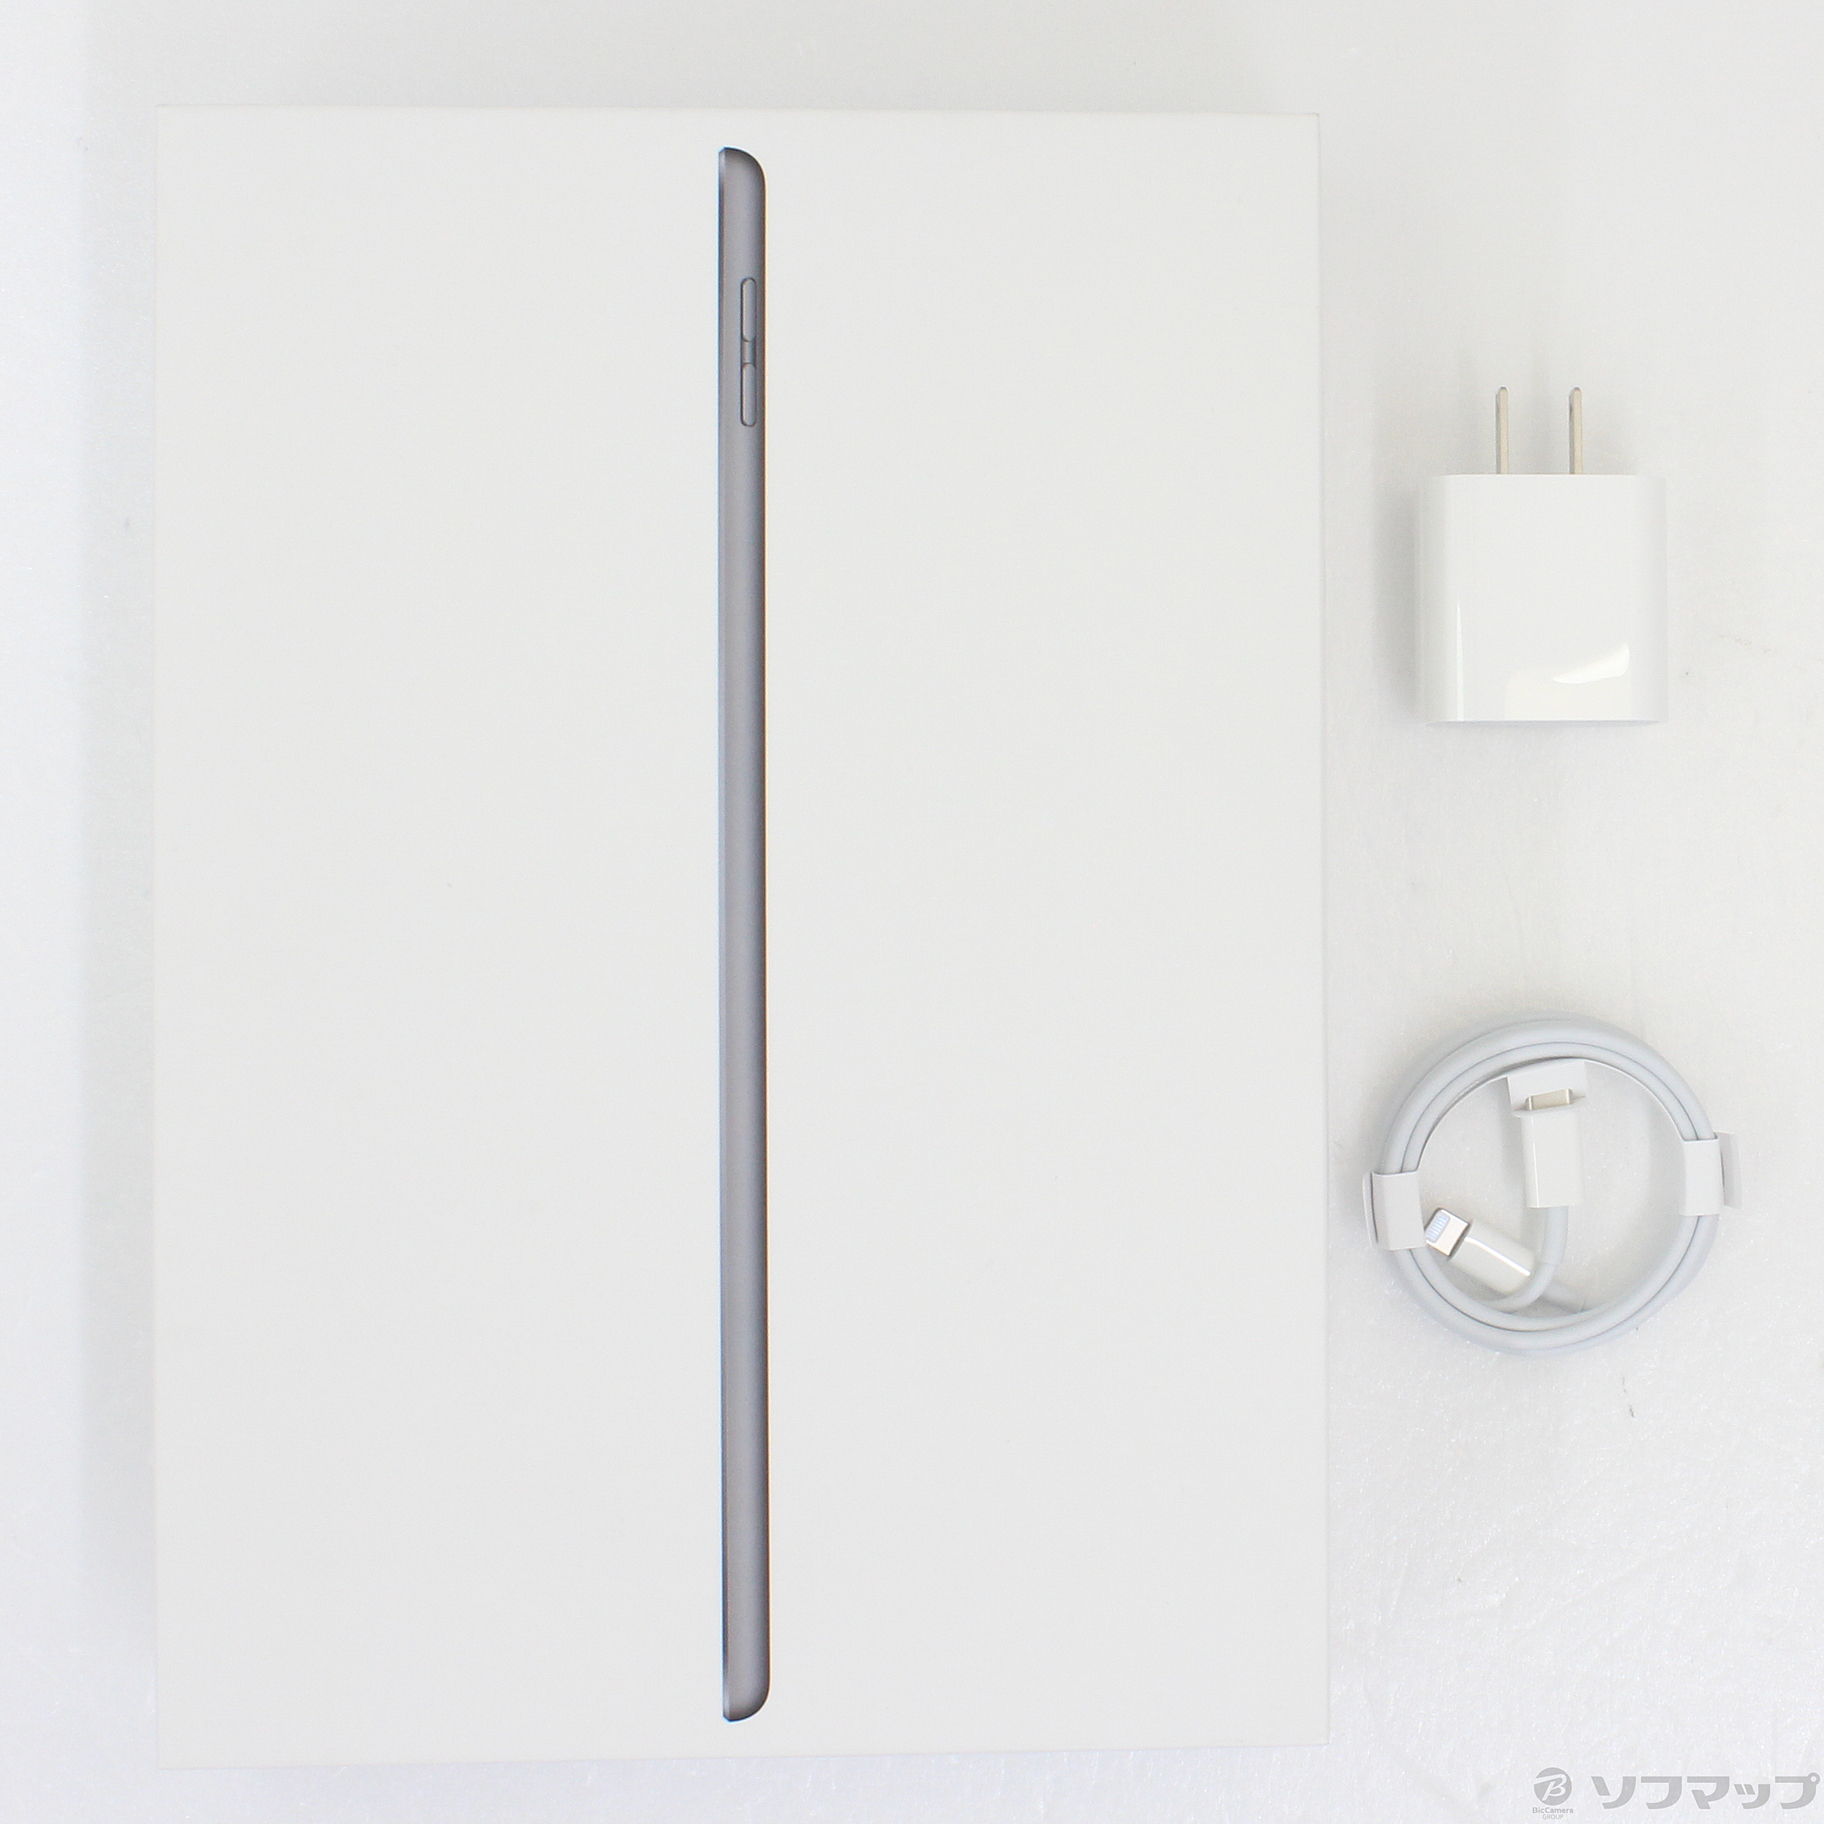 〔展示品〕 iPad 第8世代 32GB スペースグレイ 3YL92J／A Wi-Fi